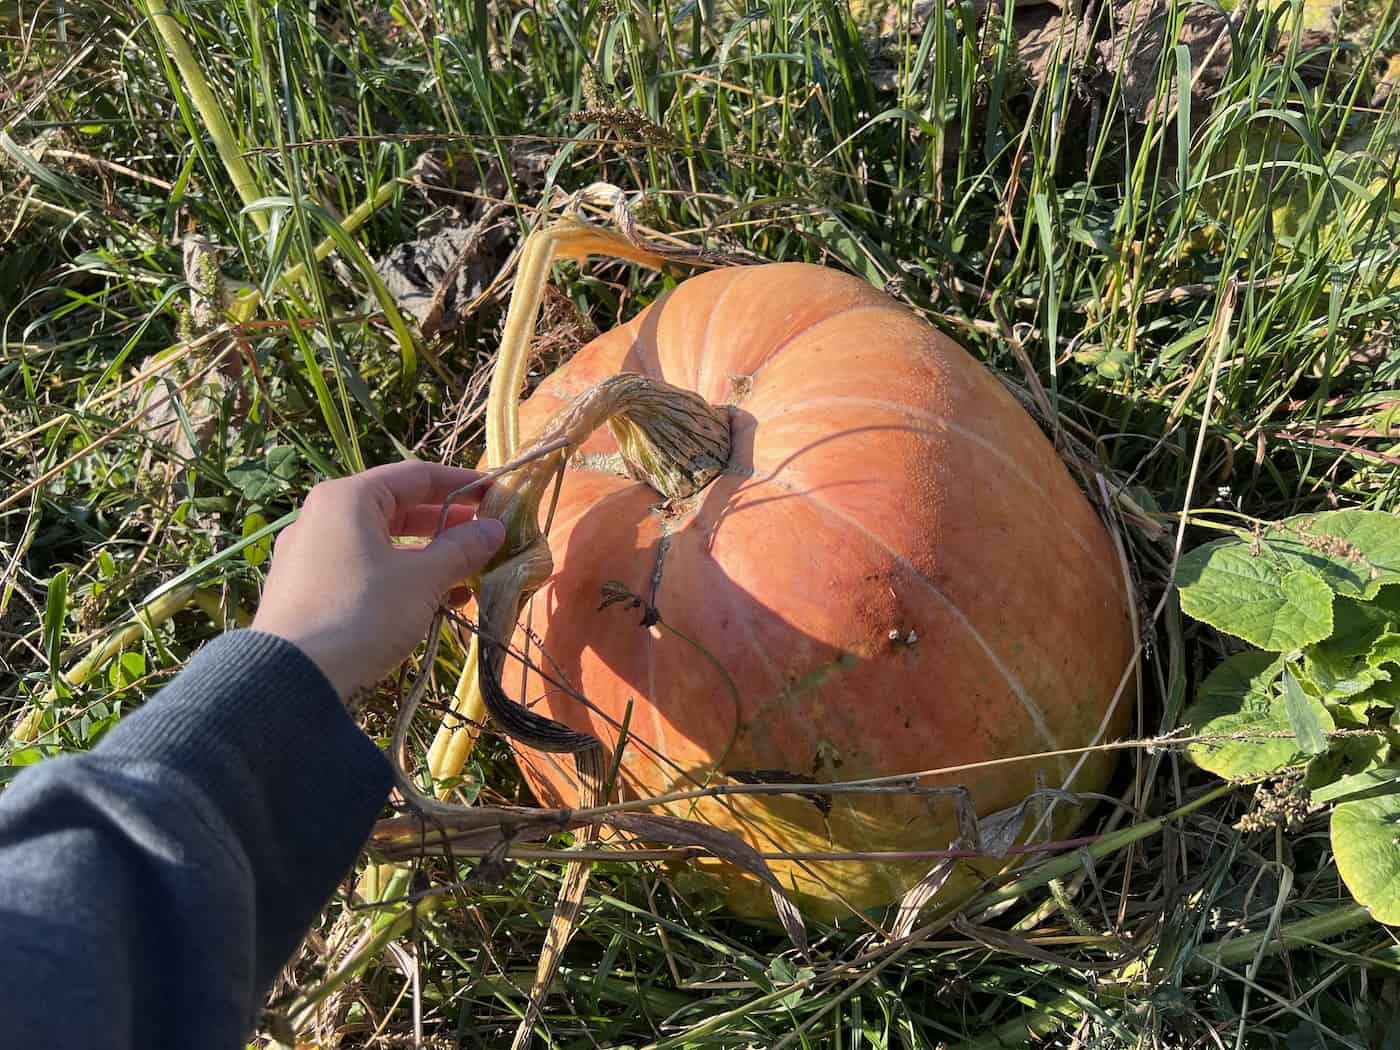 Harvesting a pumpkin